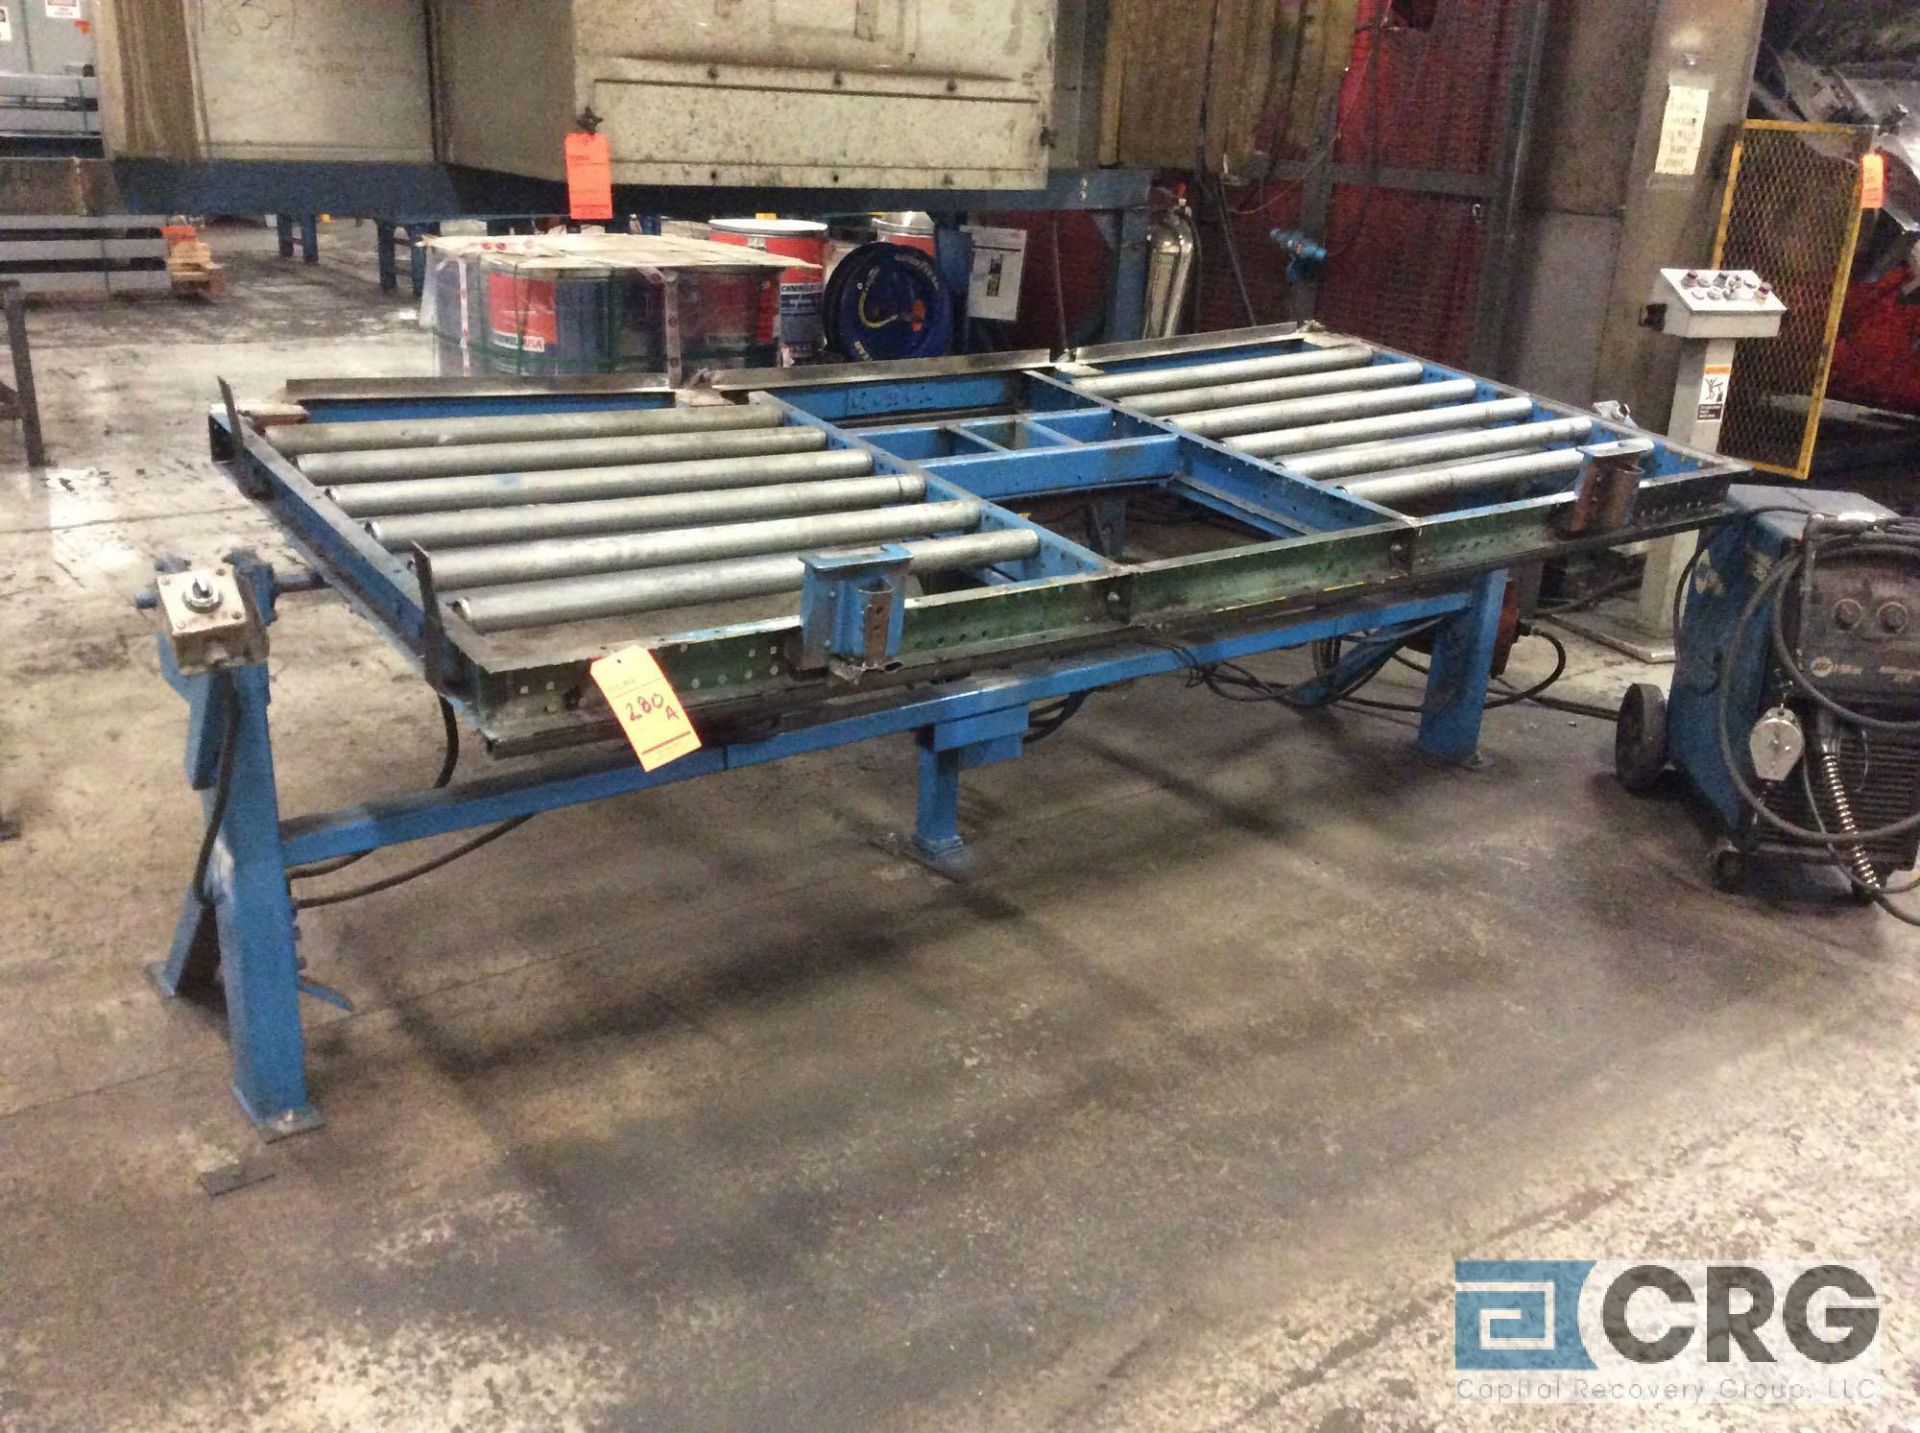 4 X 9 feet fabricated pneumatic tilt table